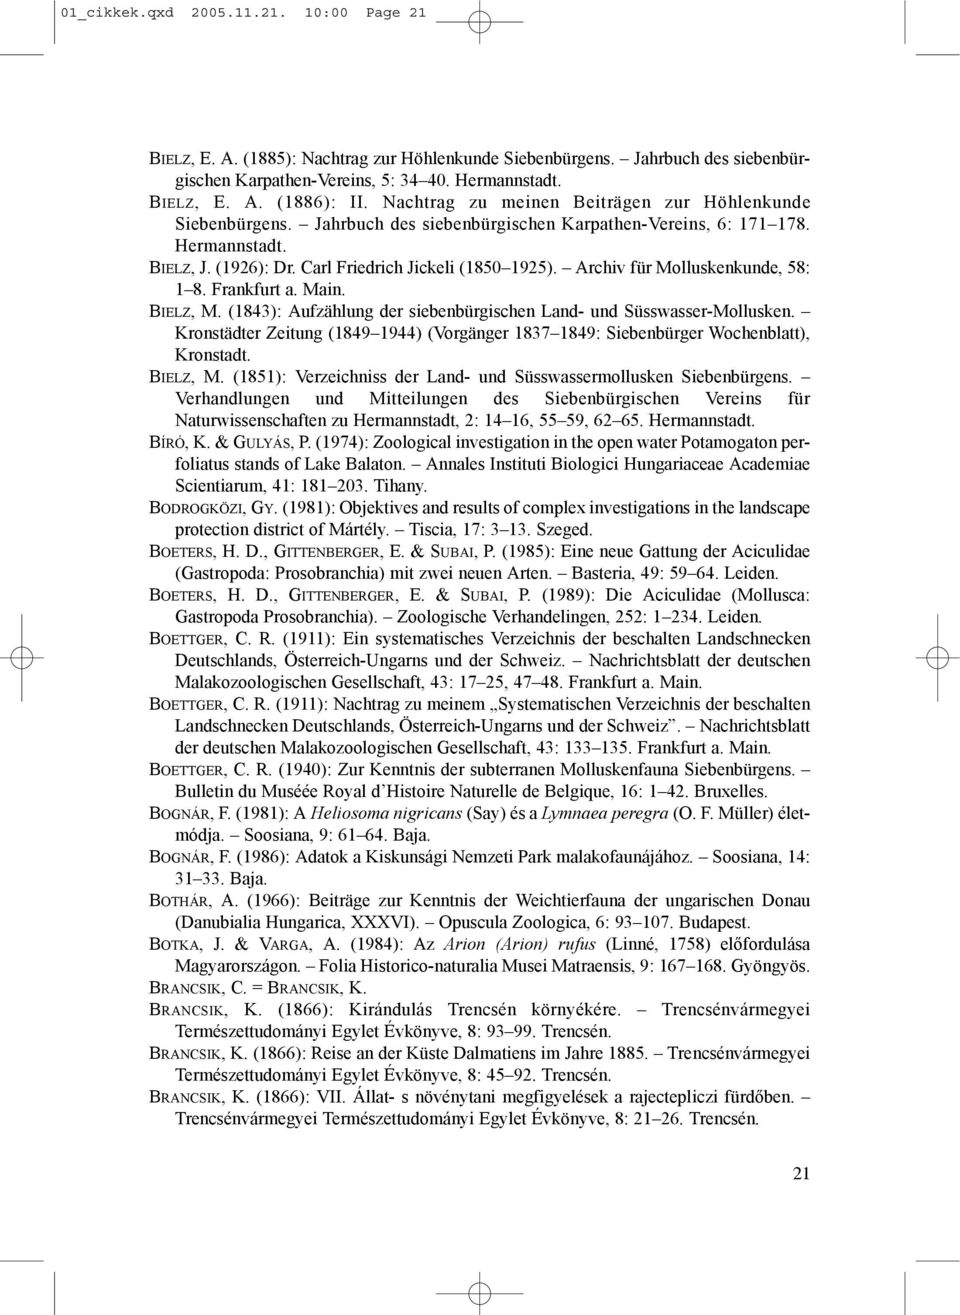 Archiv für Molluskenkunde, 58: 1 8. Frankfurt a. Main. BIELZ, M. (1843): Aufzählung der siebenbürgischen Land- und Süsswasser-Mollusken.